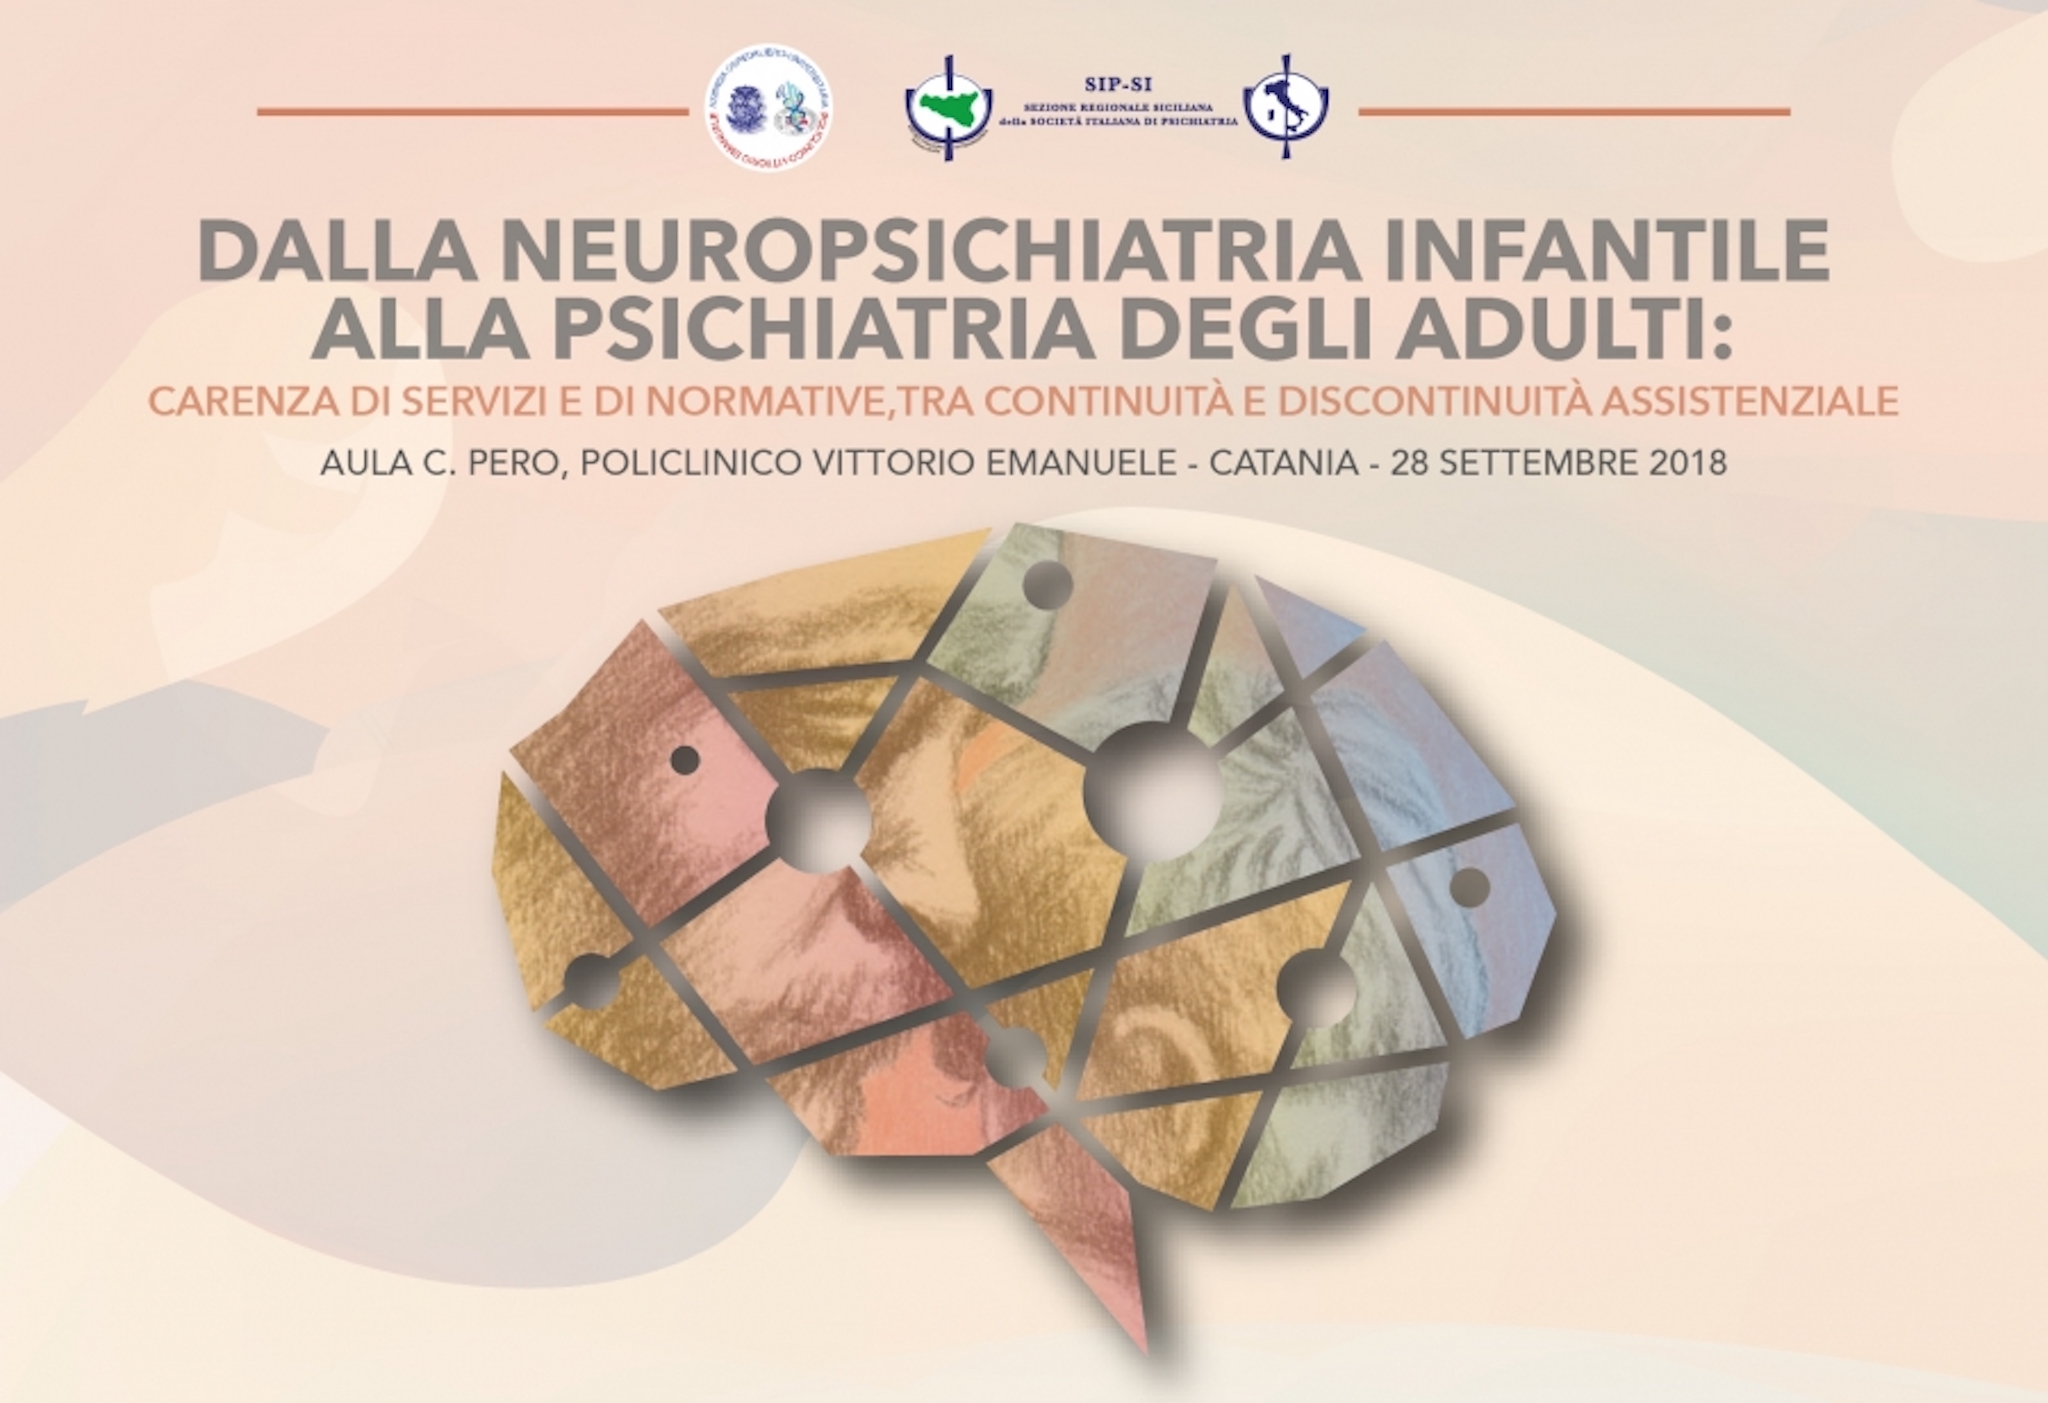 Dalla Neuropsichiatria infantile alla psichiatria degli adulti - 28 Settembre 2018